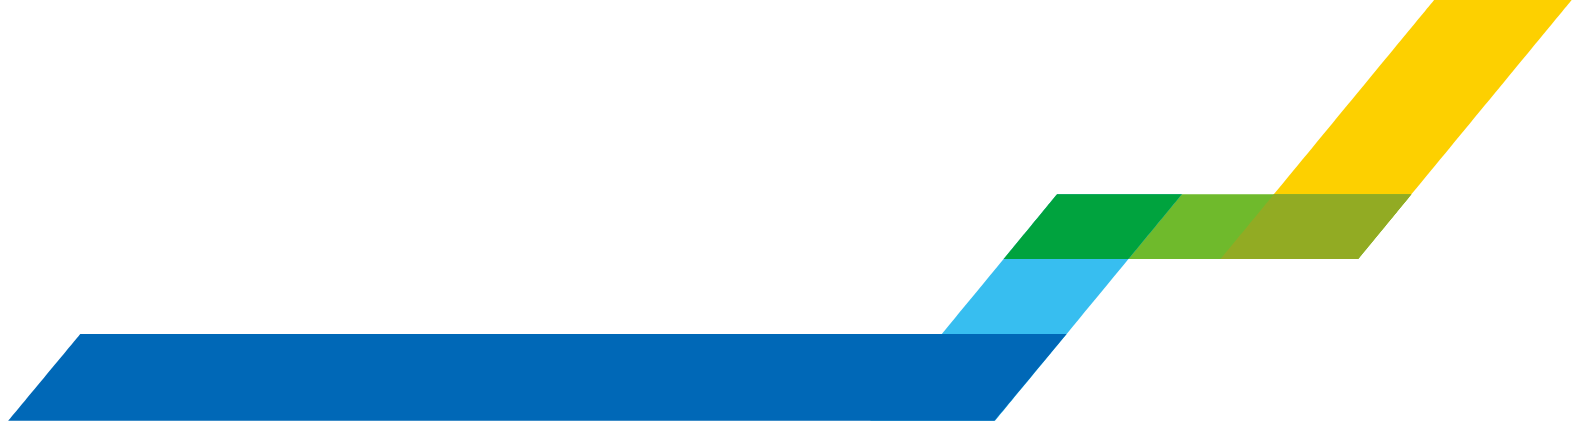 WuXi Biologics logo grand pour les fonds sombres (PNG transparent)